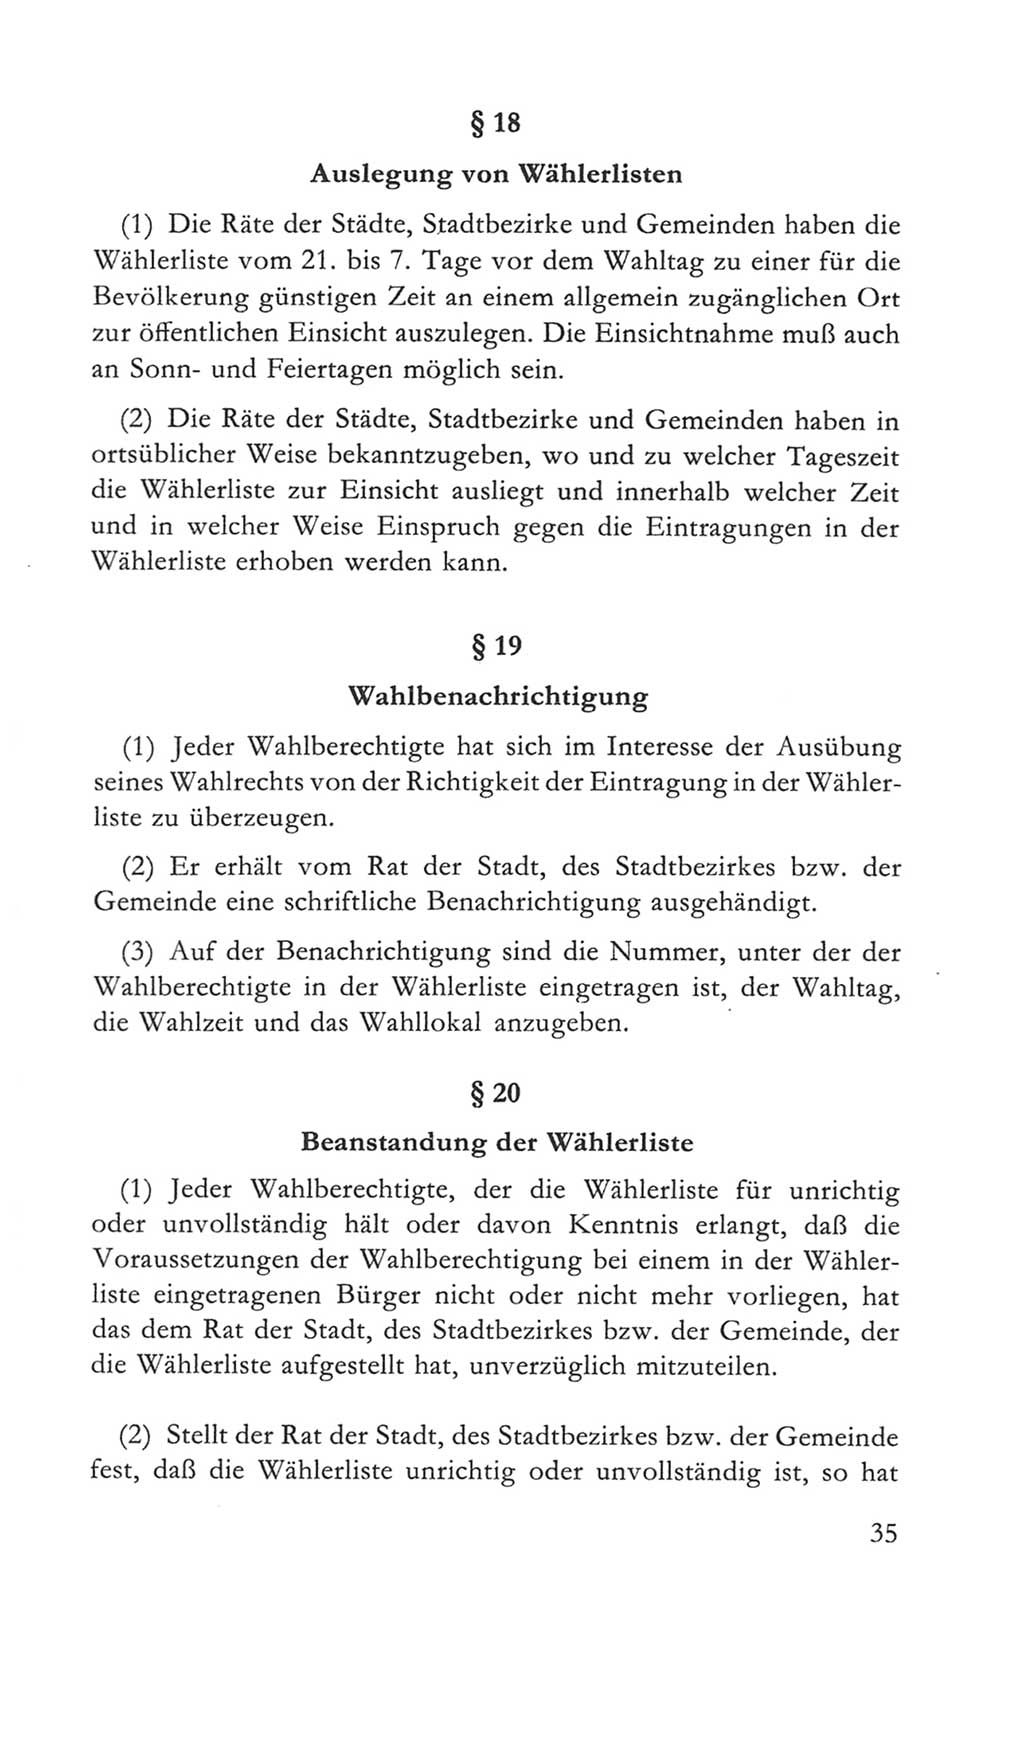 Volkskammer (VK) der Deutschen Demokratischen Republik (DDR) 5. Wahlperiode 1967-1971, Seite 35 (VK. DDR 5. WP. 1967-1971, S. 35)